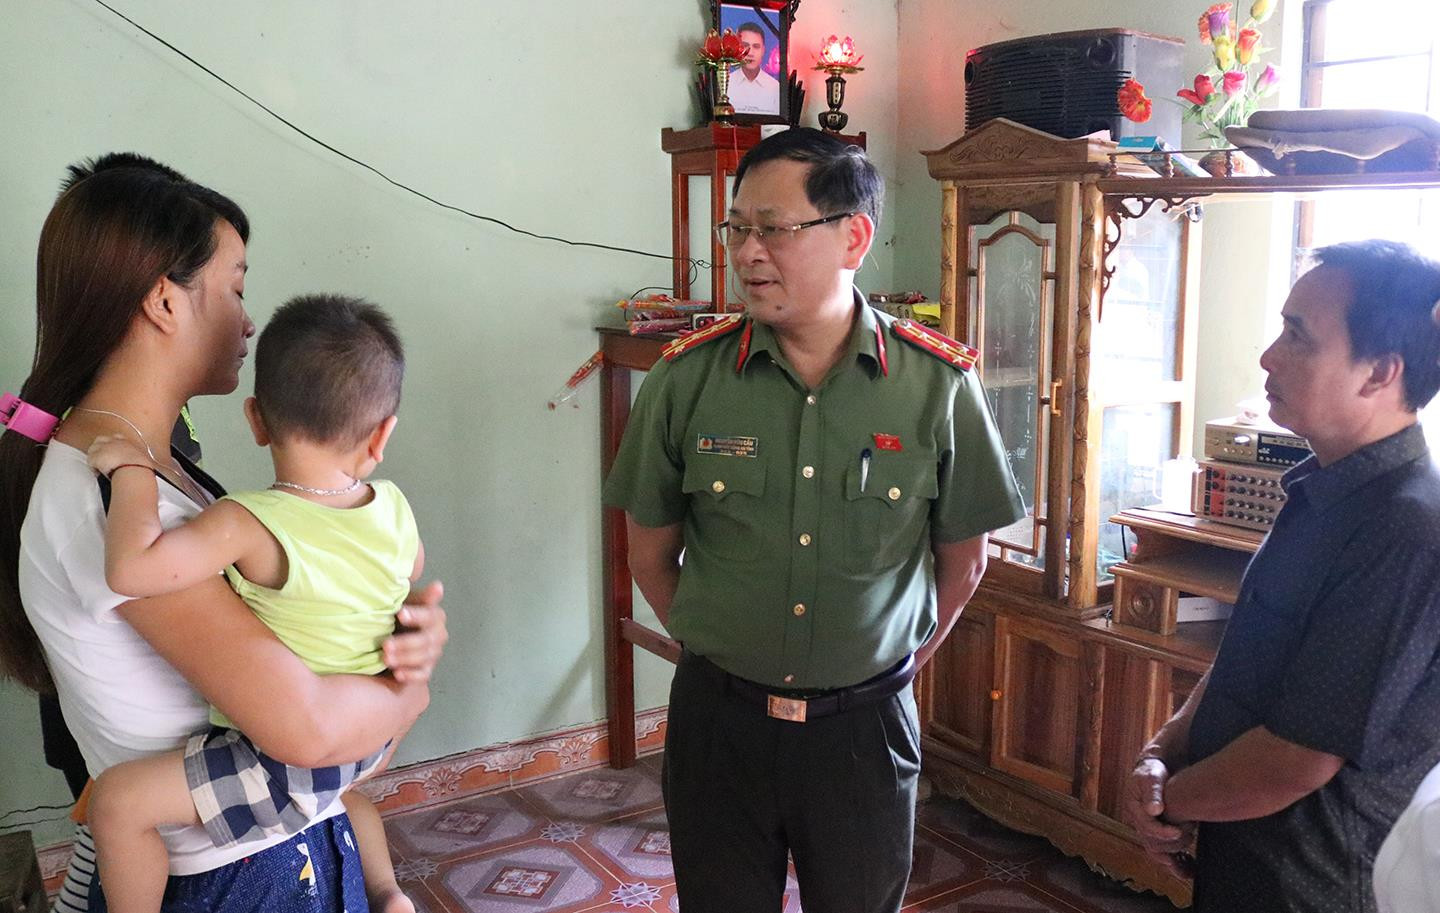 Đại tá Nguyễn Hữu Cầu thăm hỏi vợ anh Vi Văn May, người bị thủy điện Nậm Nơn xả nước không thông báo làm tử vong mà Báo Nghệ An vừa có bài phản ánh. Ảnh: Tiến Hùng